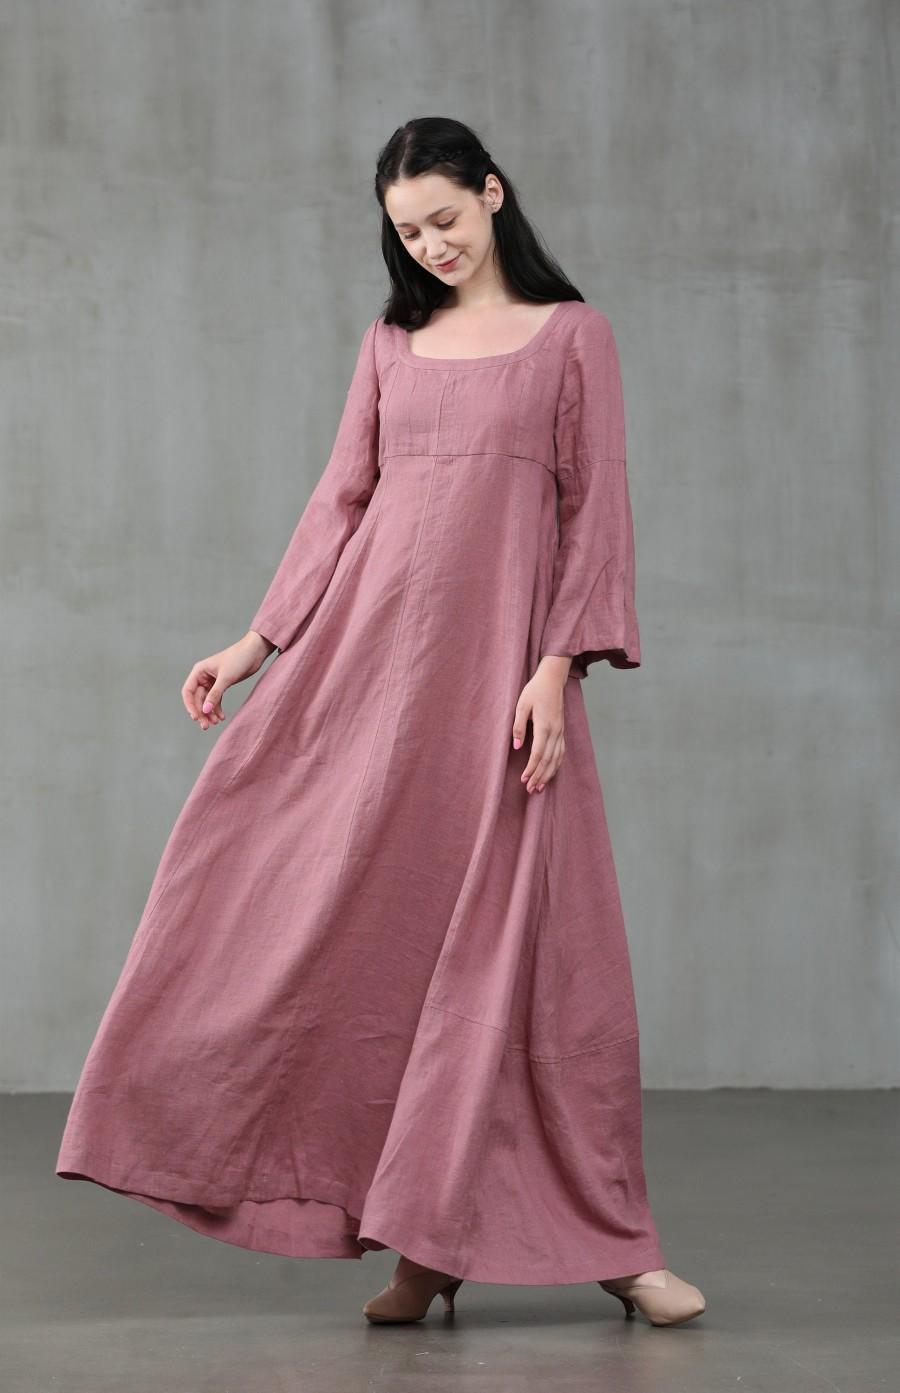 Mariage - ashed lilac linen dress, maxi linen dress, puff sleeve dress, wedding dress, green dress, princess dress, Renaissance dress